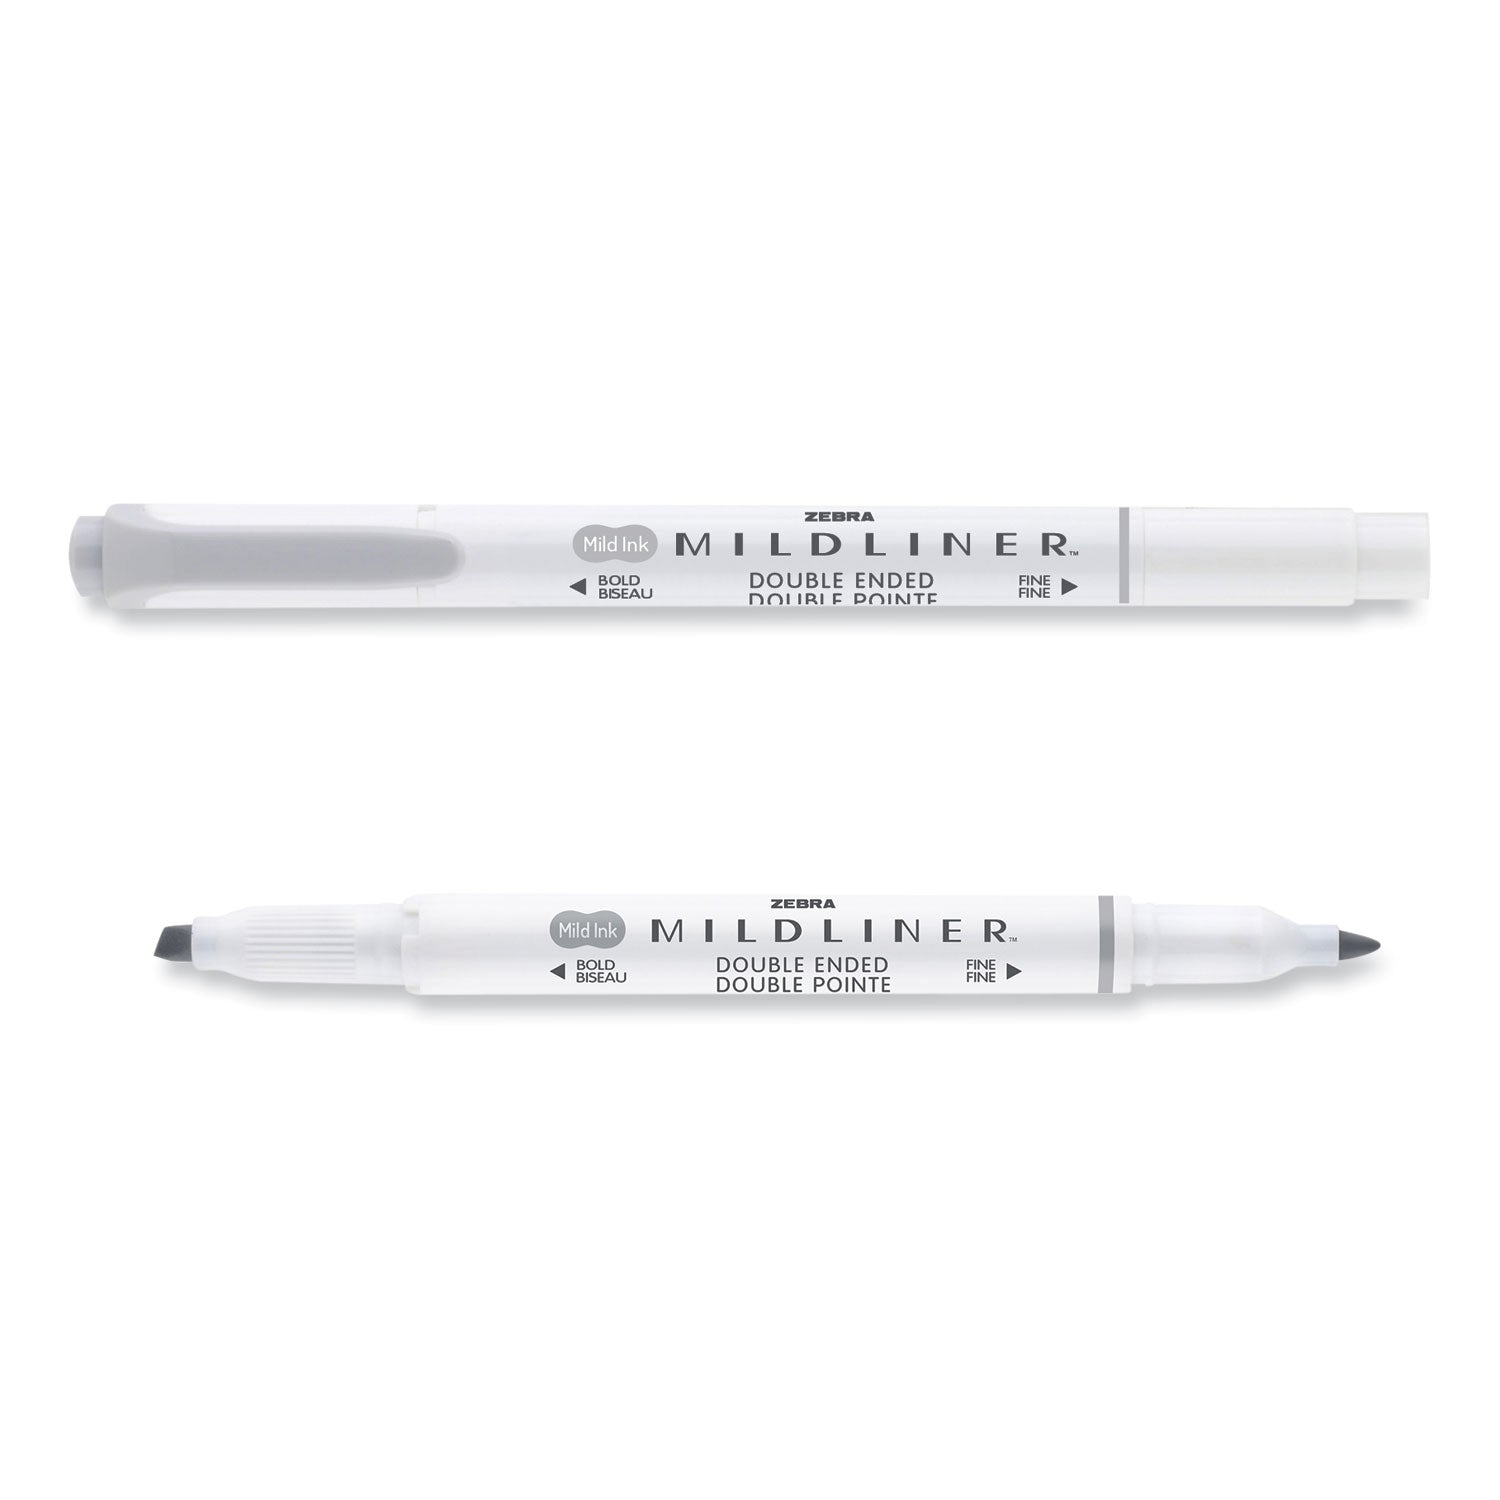 mildliner-double-ended-highlighter-assorted-ink-colors-bold-chisel-fine-bullet-tips-assorted-barrel-colors-10-set_zeb78101 - 2